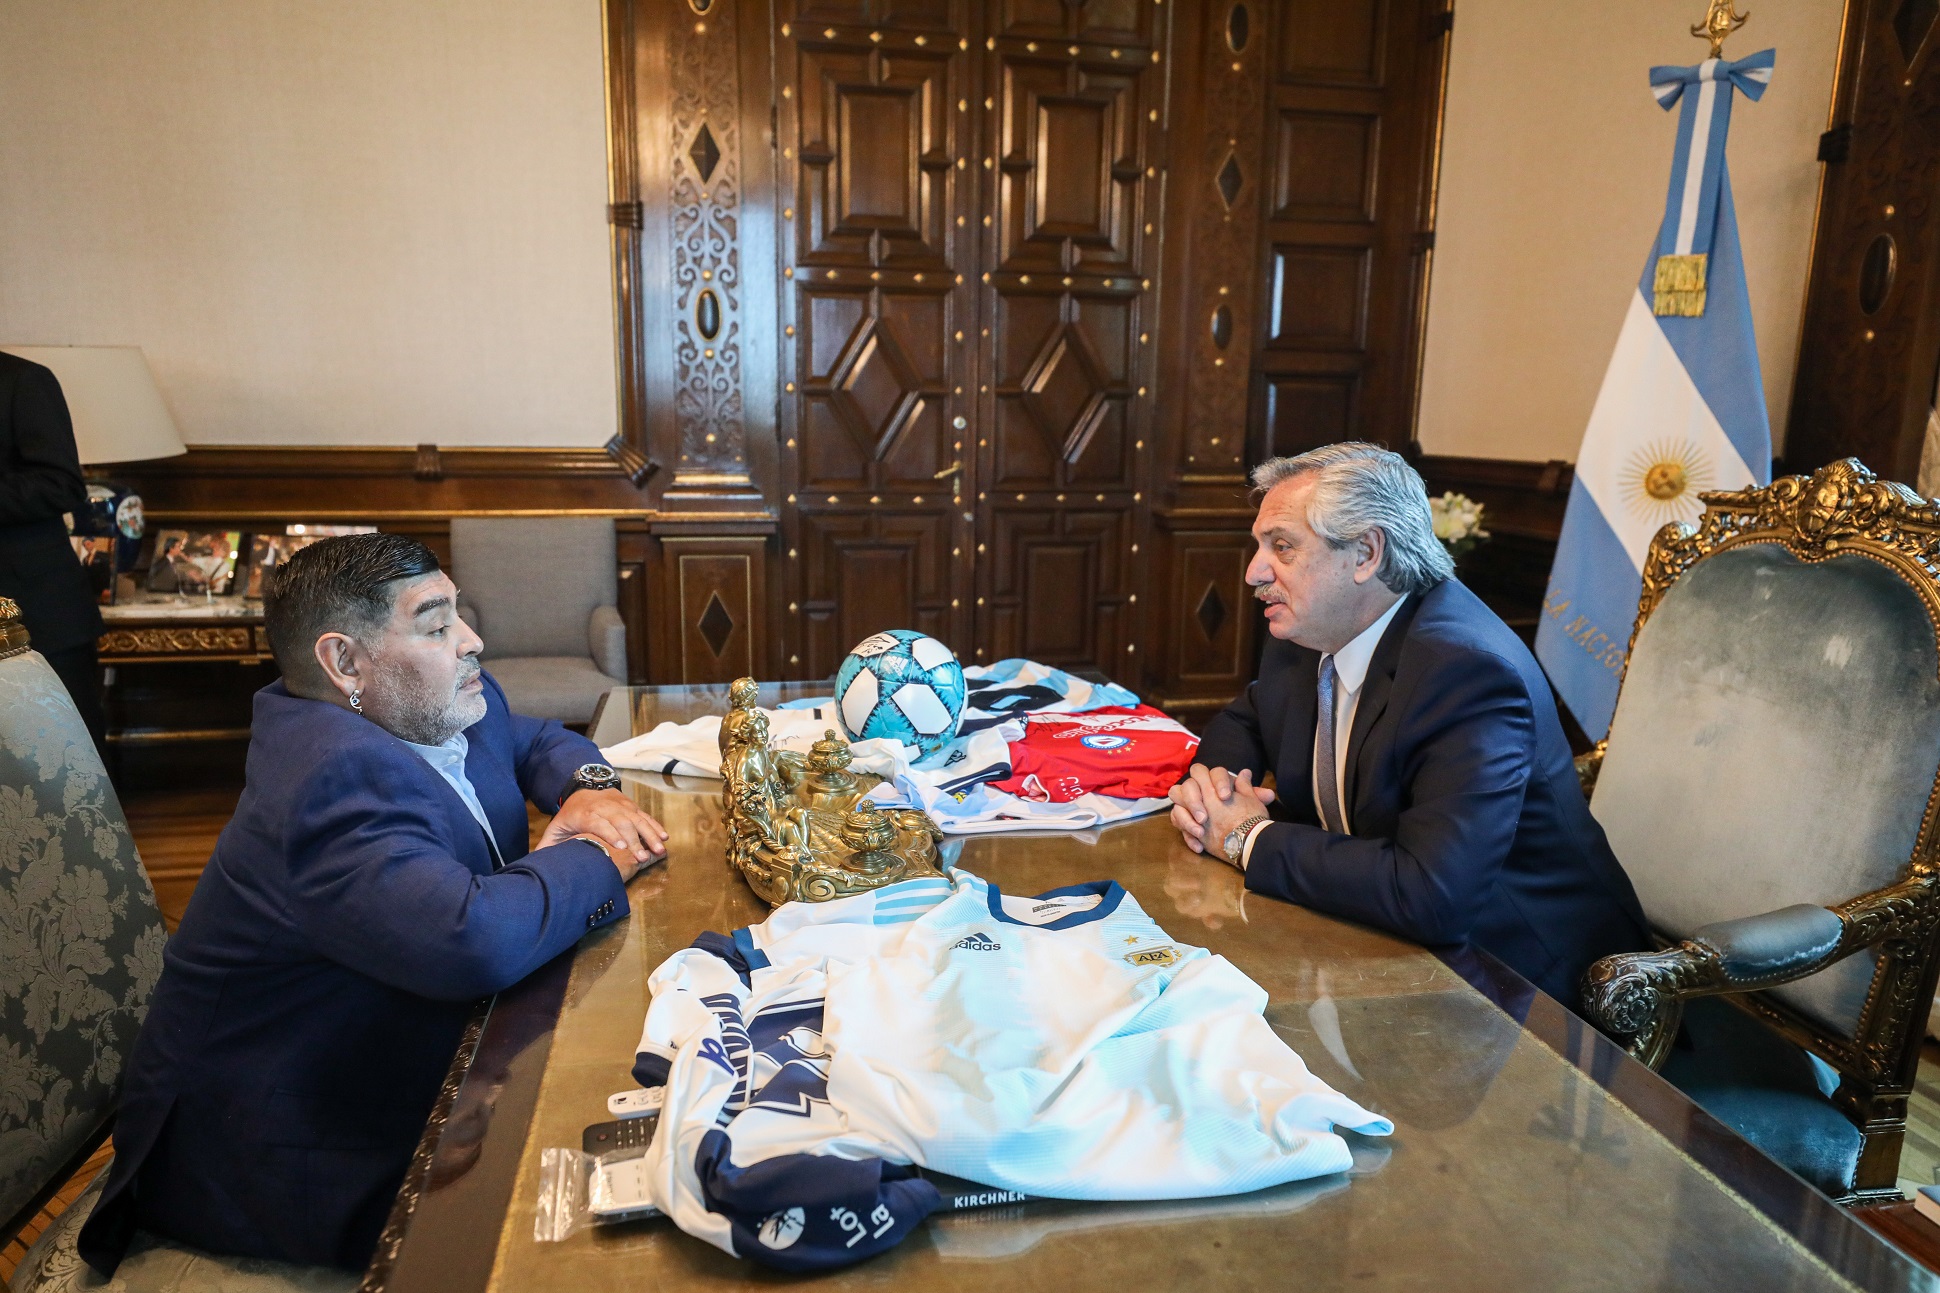 El presidente Alberto Fernández recibió a Diego Maradona 